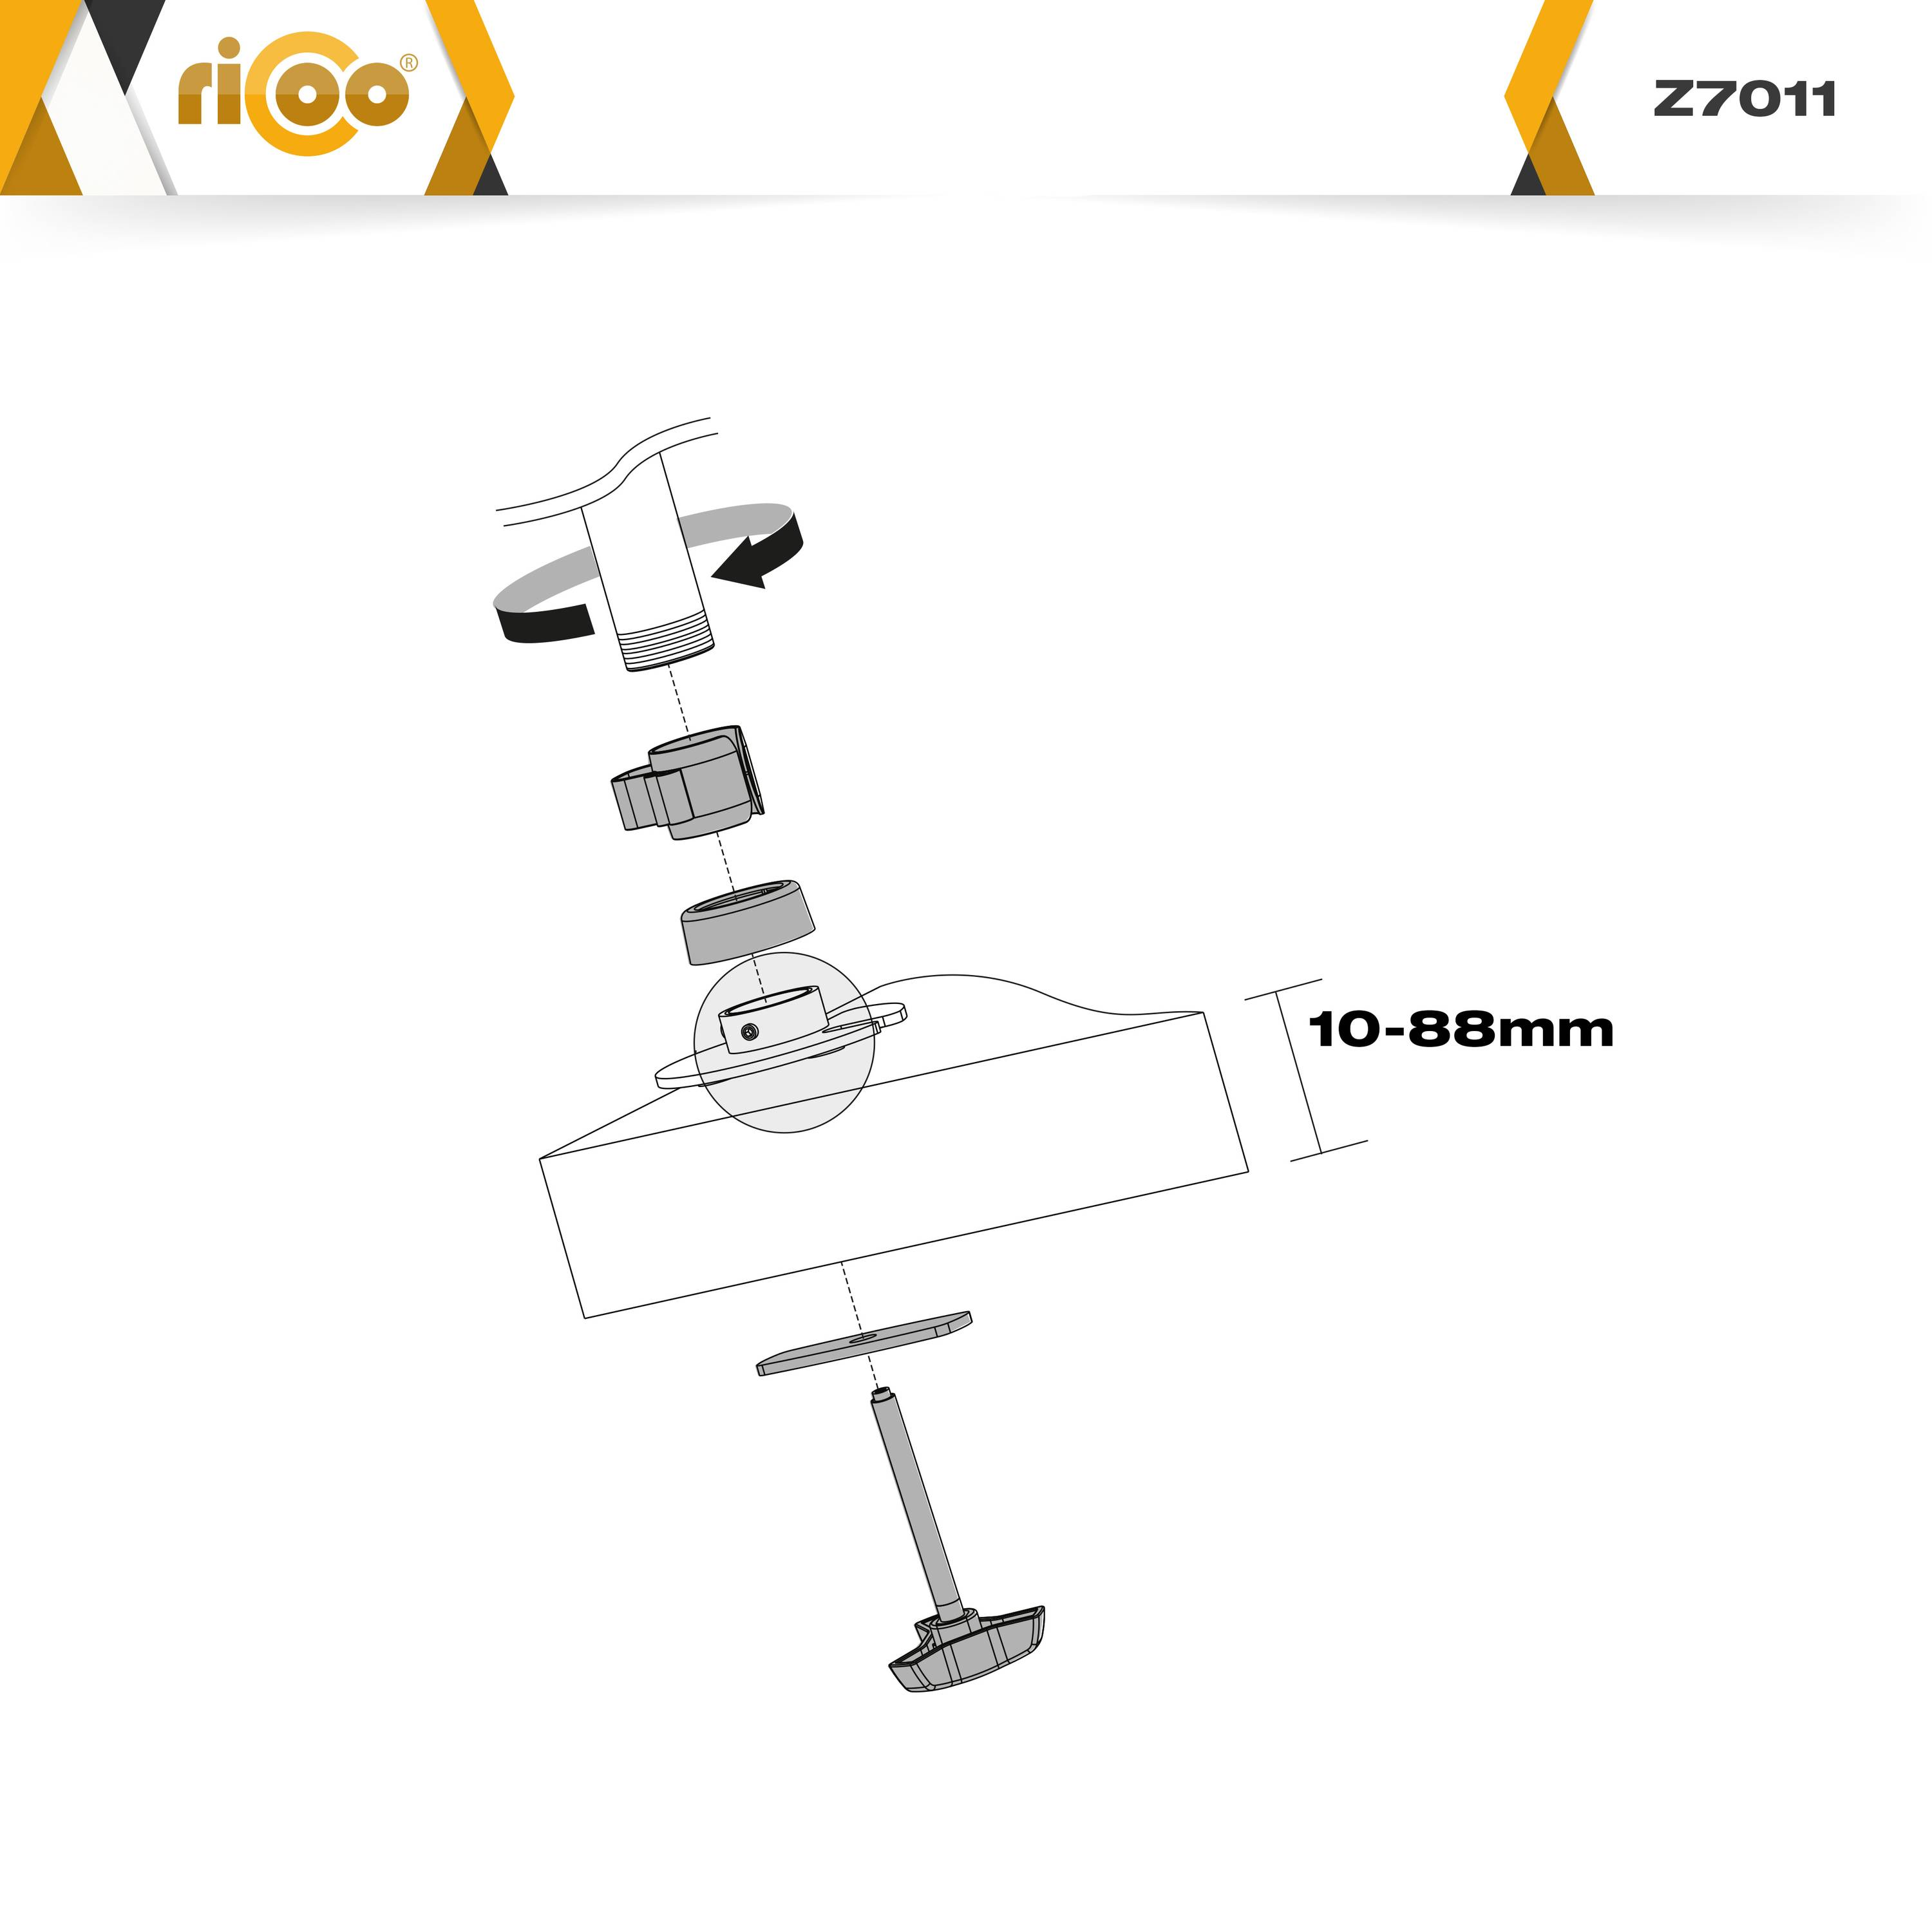 silber Monitor Z7011 Tischhalterung, RICOO